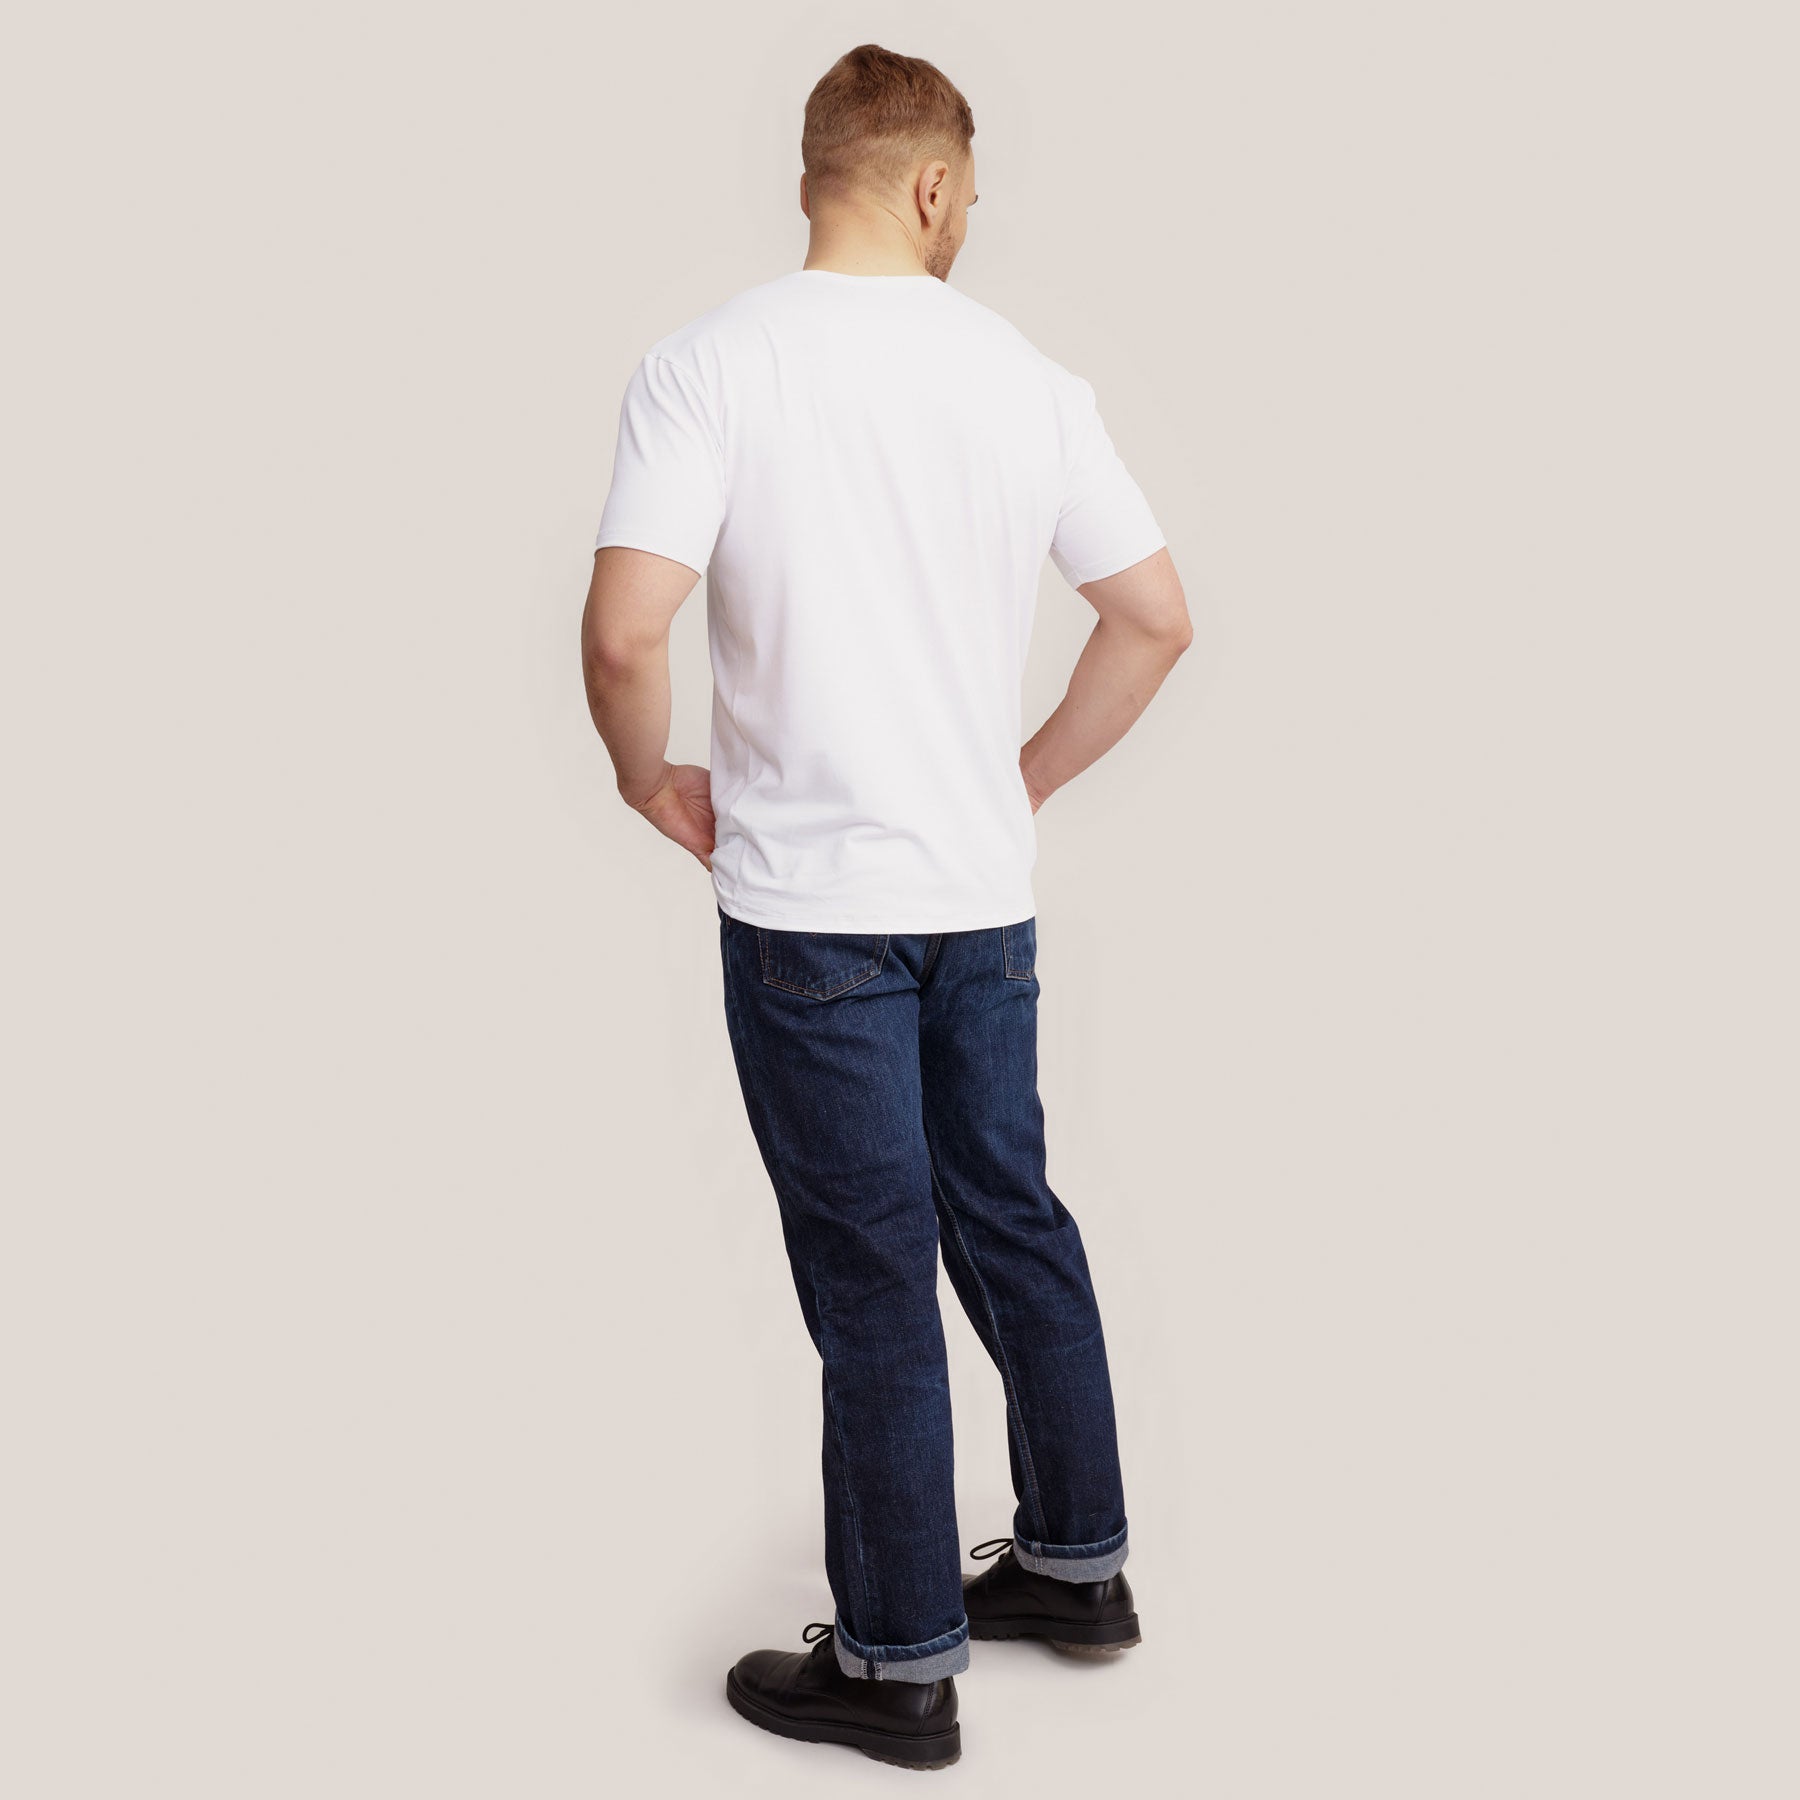 Miesten klassinen Slimmi t-paita kuvattuna takaapäin. Paidan pituus on lantiolle.